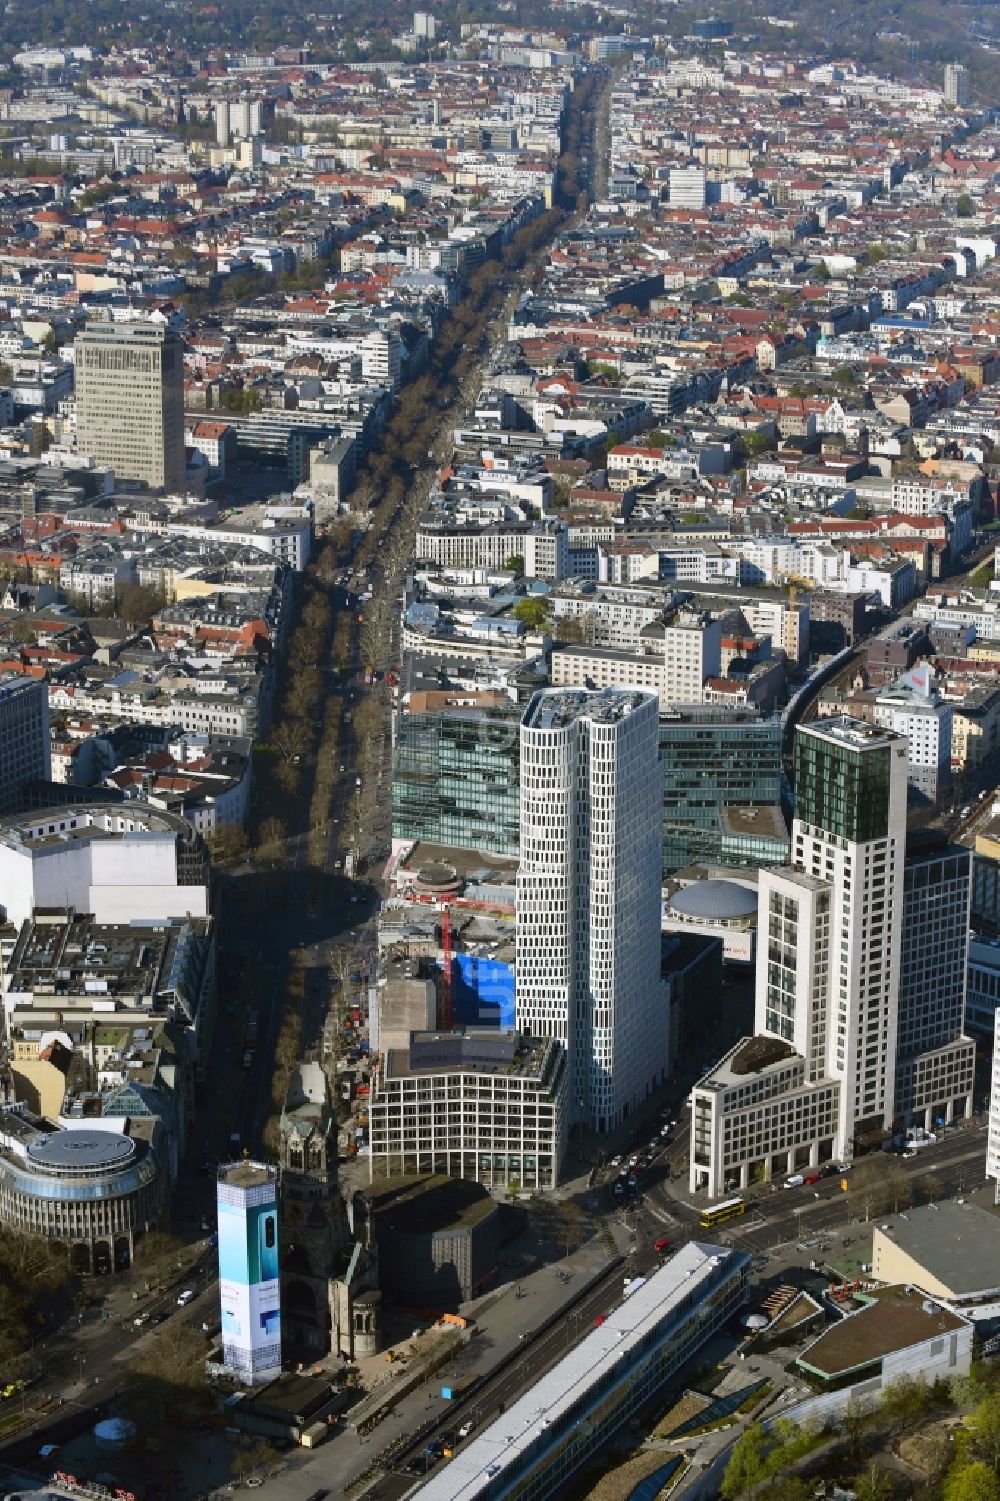 Berlin von oben - Straßenführung der bekannten Flaniermeile und Einkaufsstraße Kudamm - Kurfürstendamm im Ortsteil Charlottenburg in Berlin, Deutschland